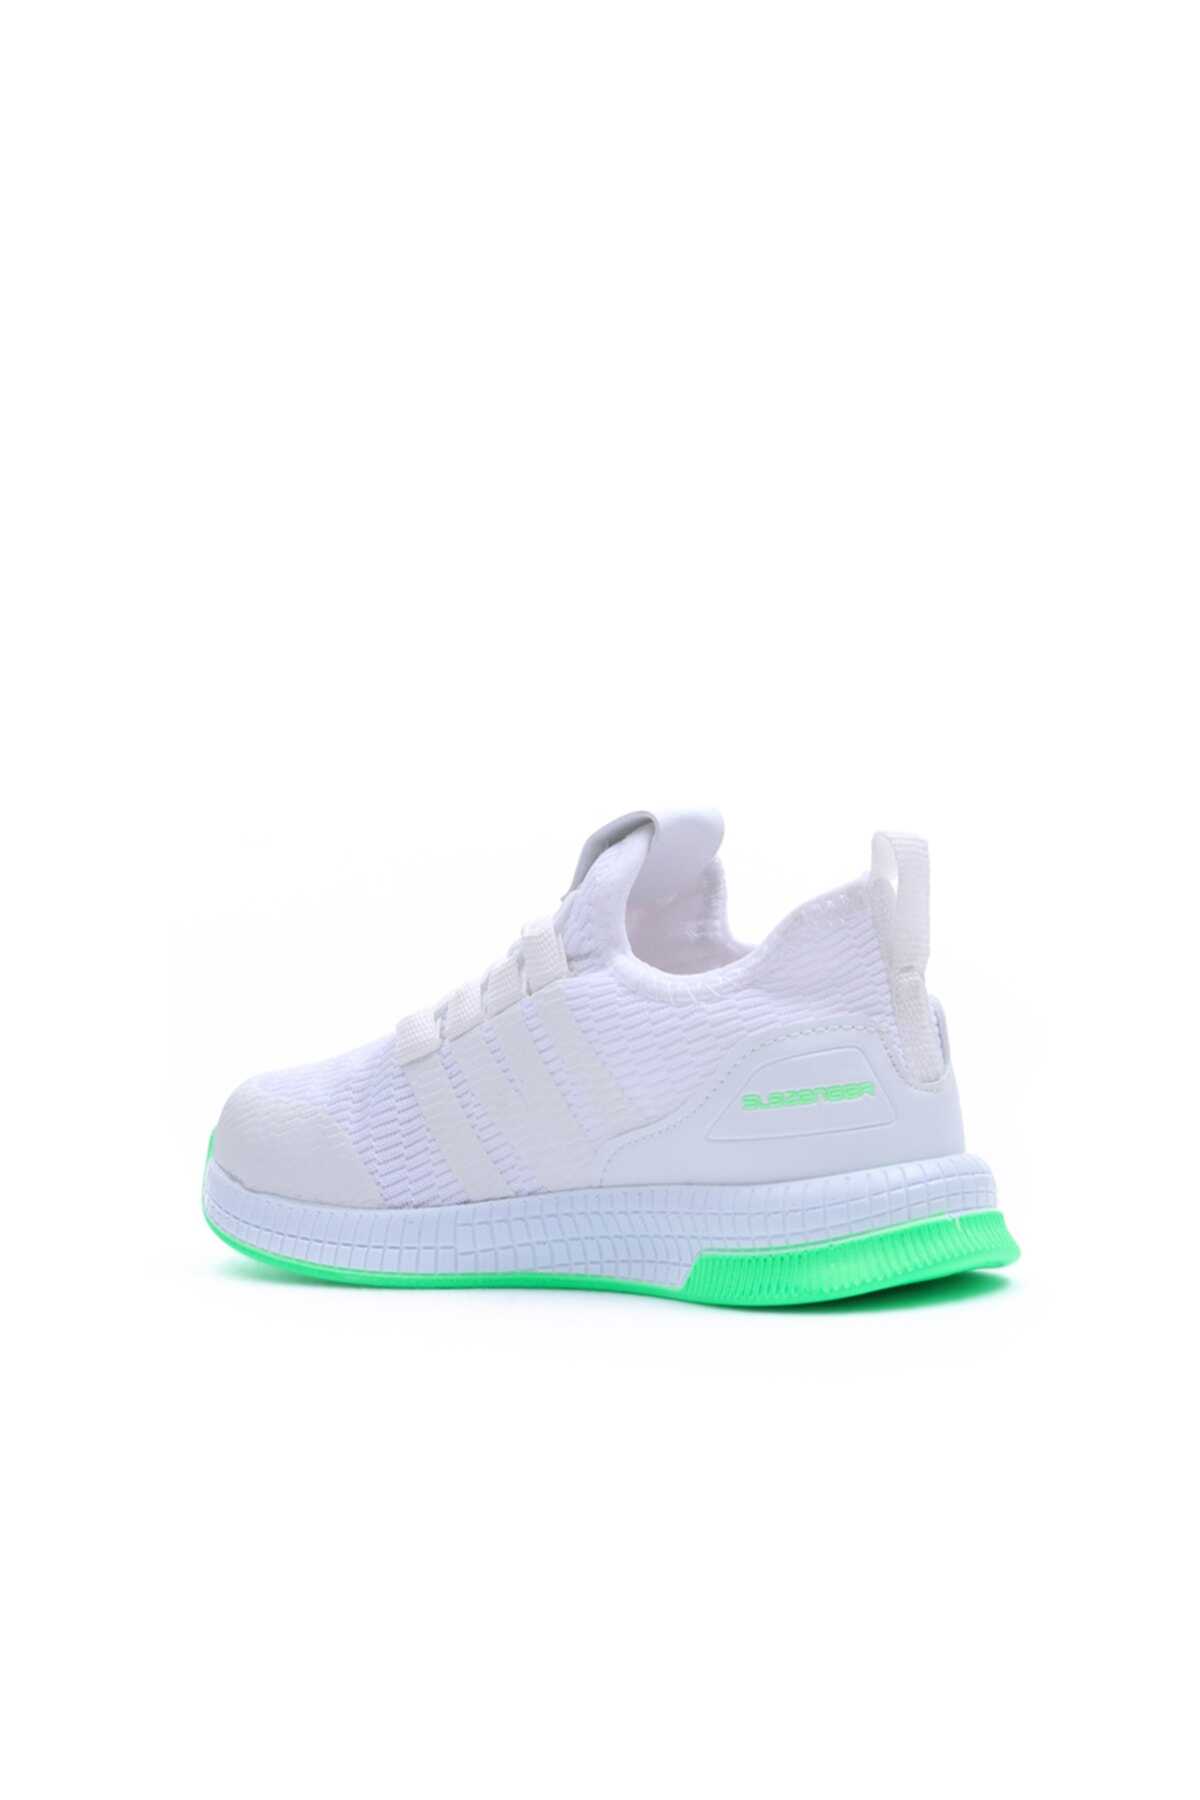 کفش کتانی بچه گانه یونیسکس سفید سبز برند Slazenger 